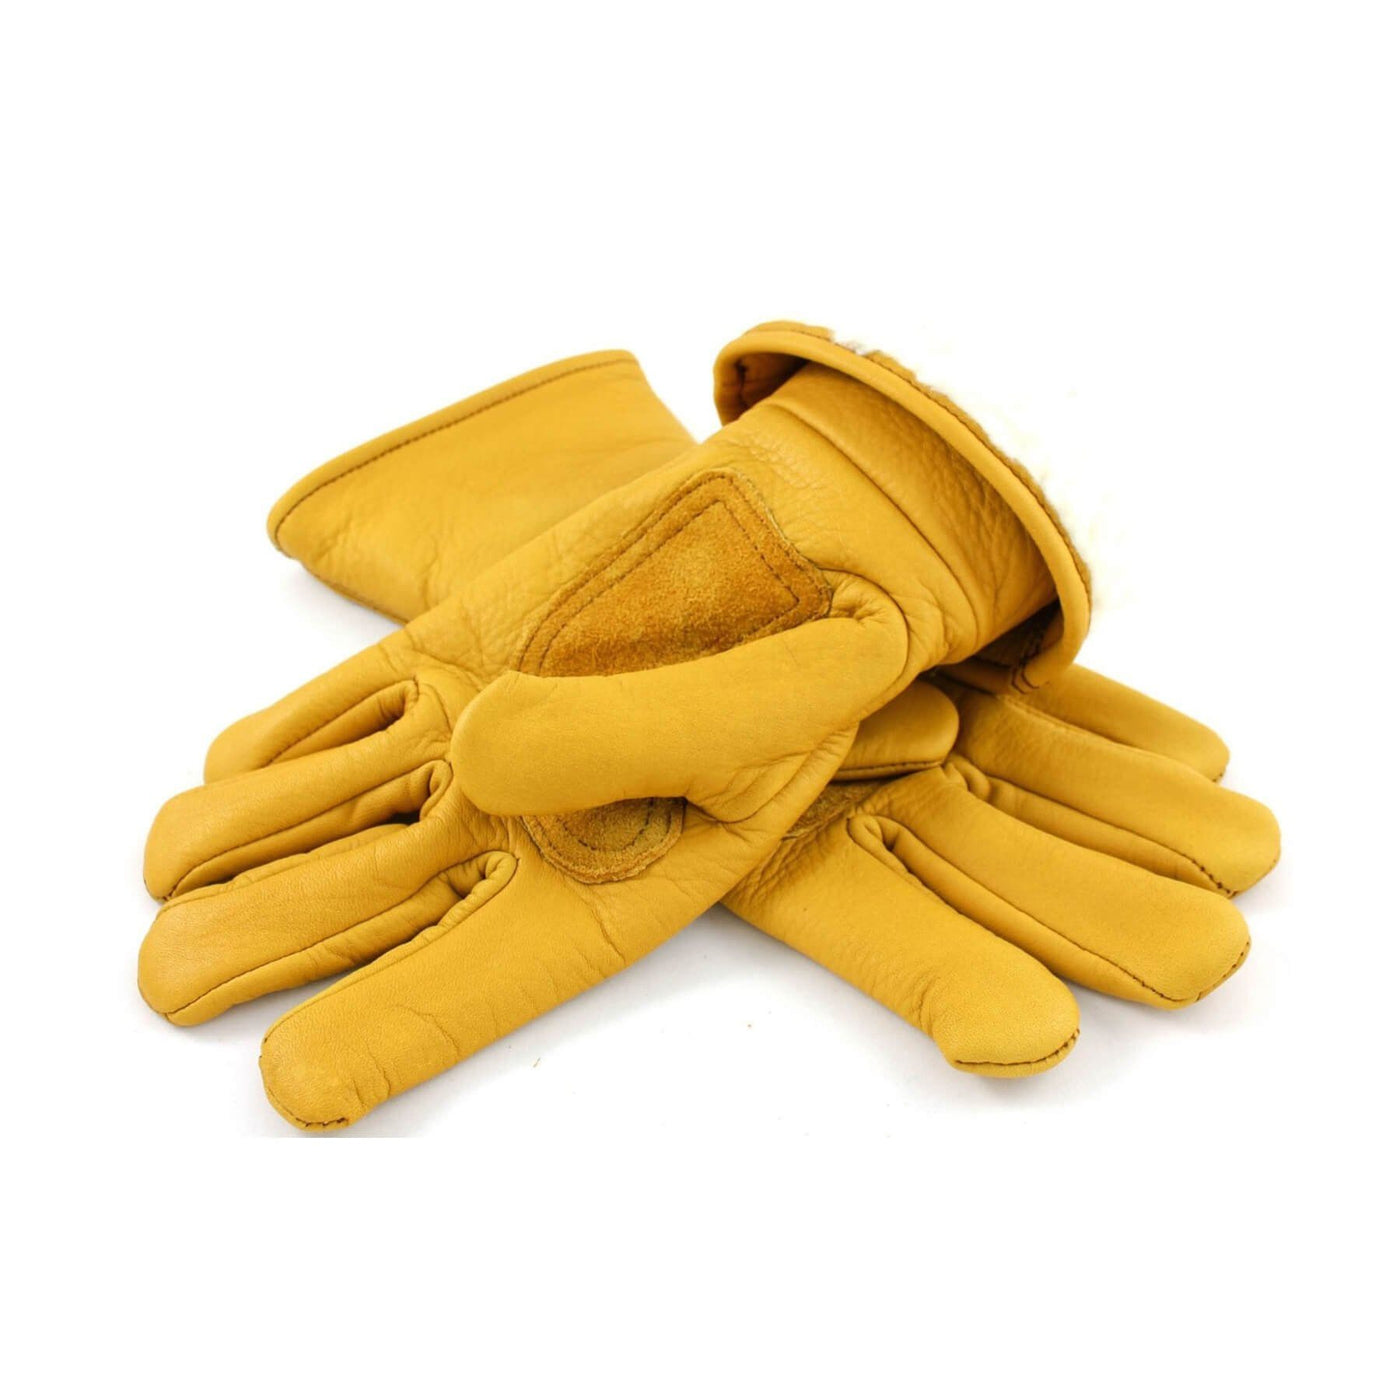 Kytone Leder-Handschuhe gefüttert gelb gold Kytone 